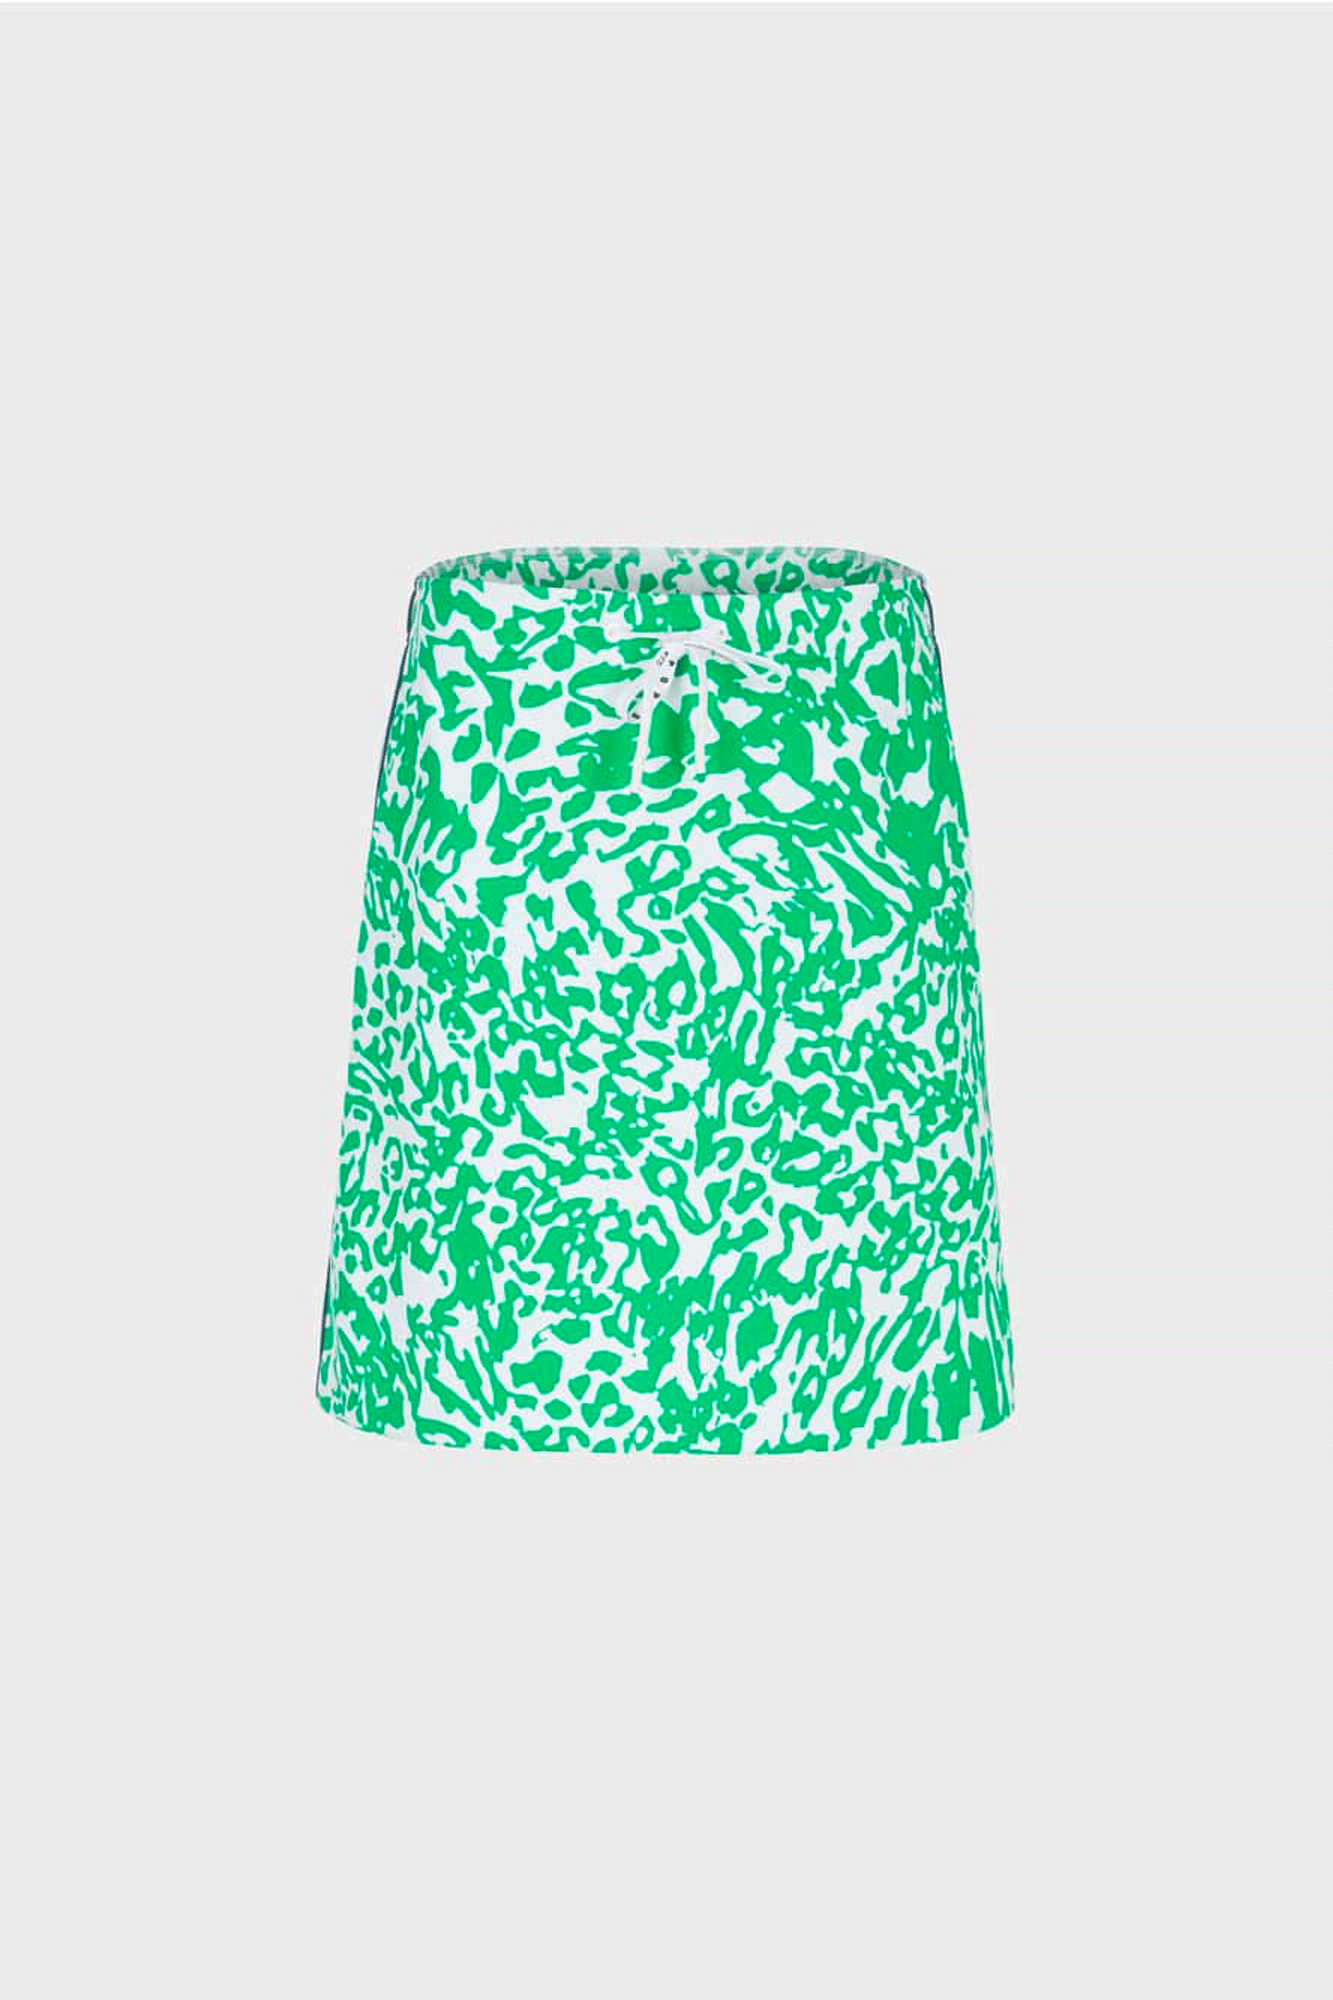 Leopard skirt with zipper – Seventh Street Ph